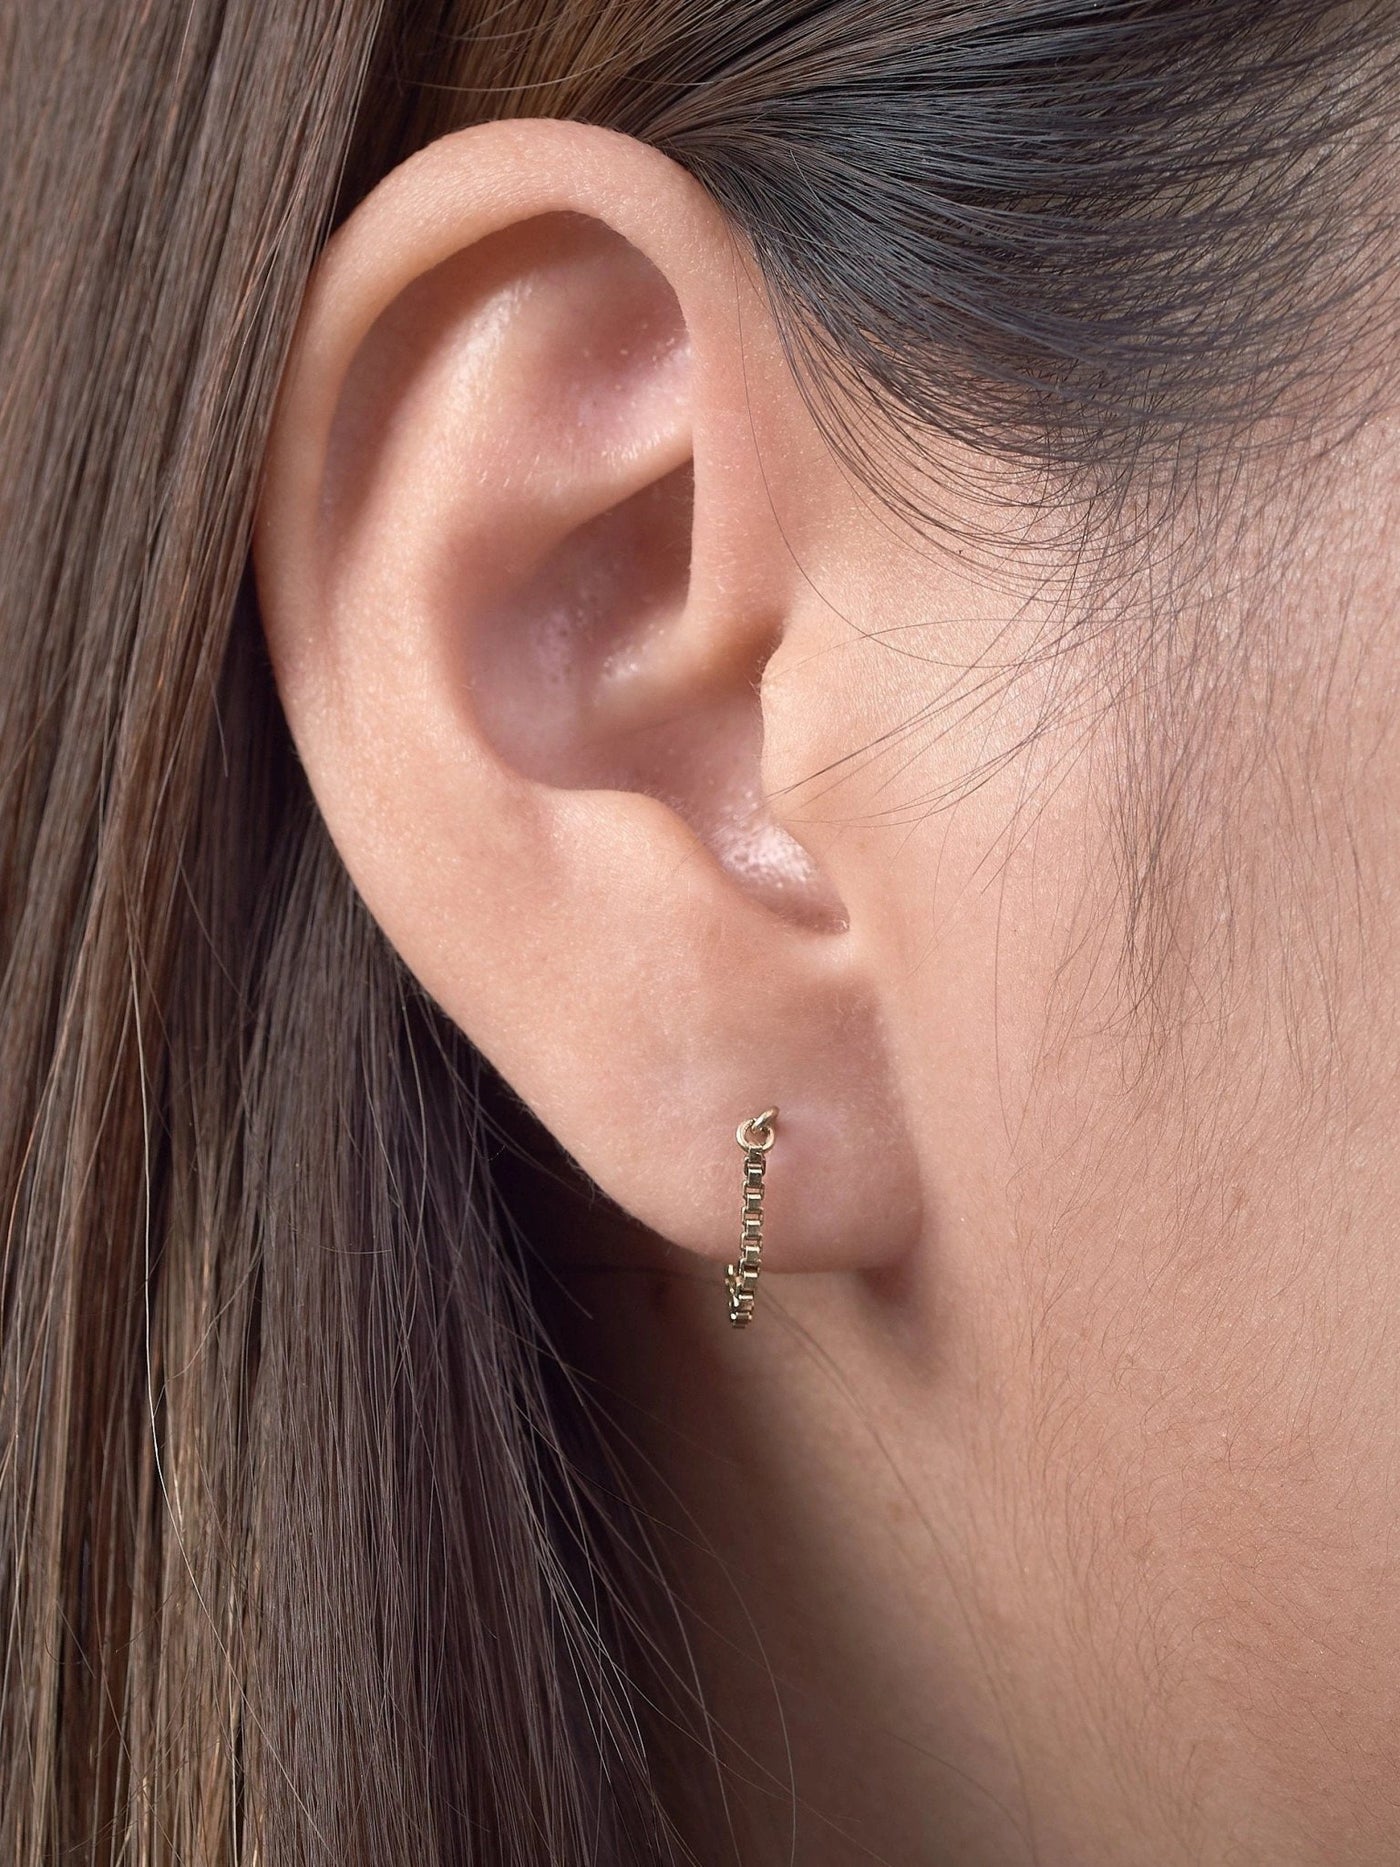 Alisia Ear Threader Earrings - 1124K Gold PlatedBackUpItemsChain Drop EarringsLunai Jewelry